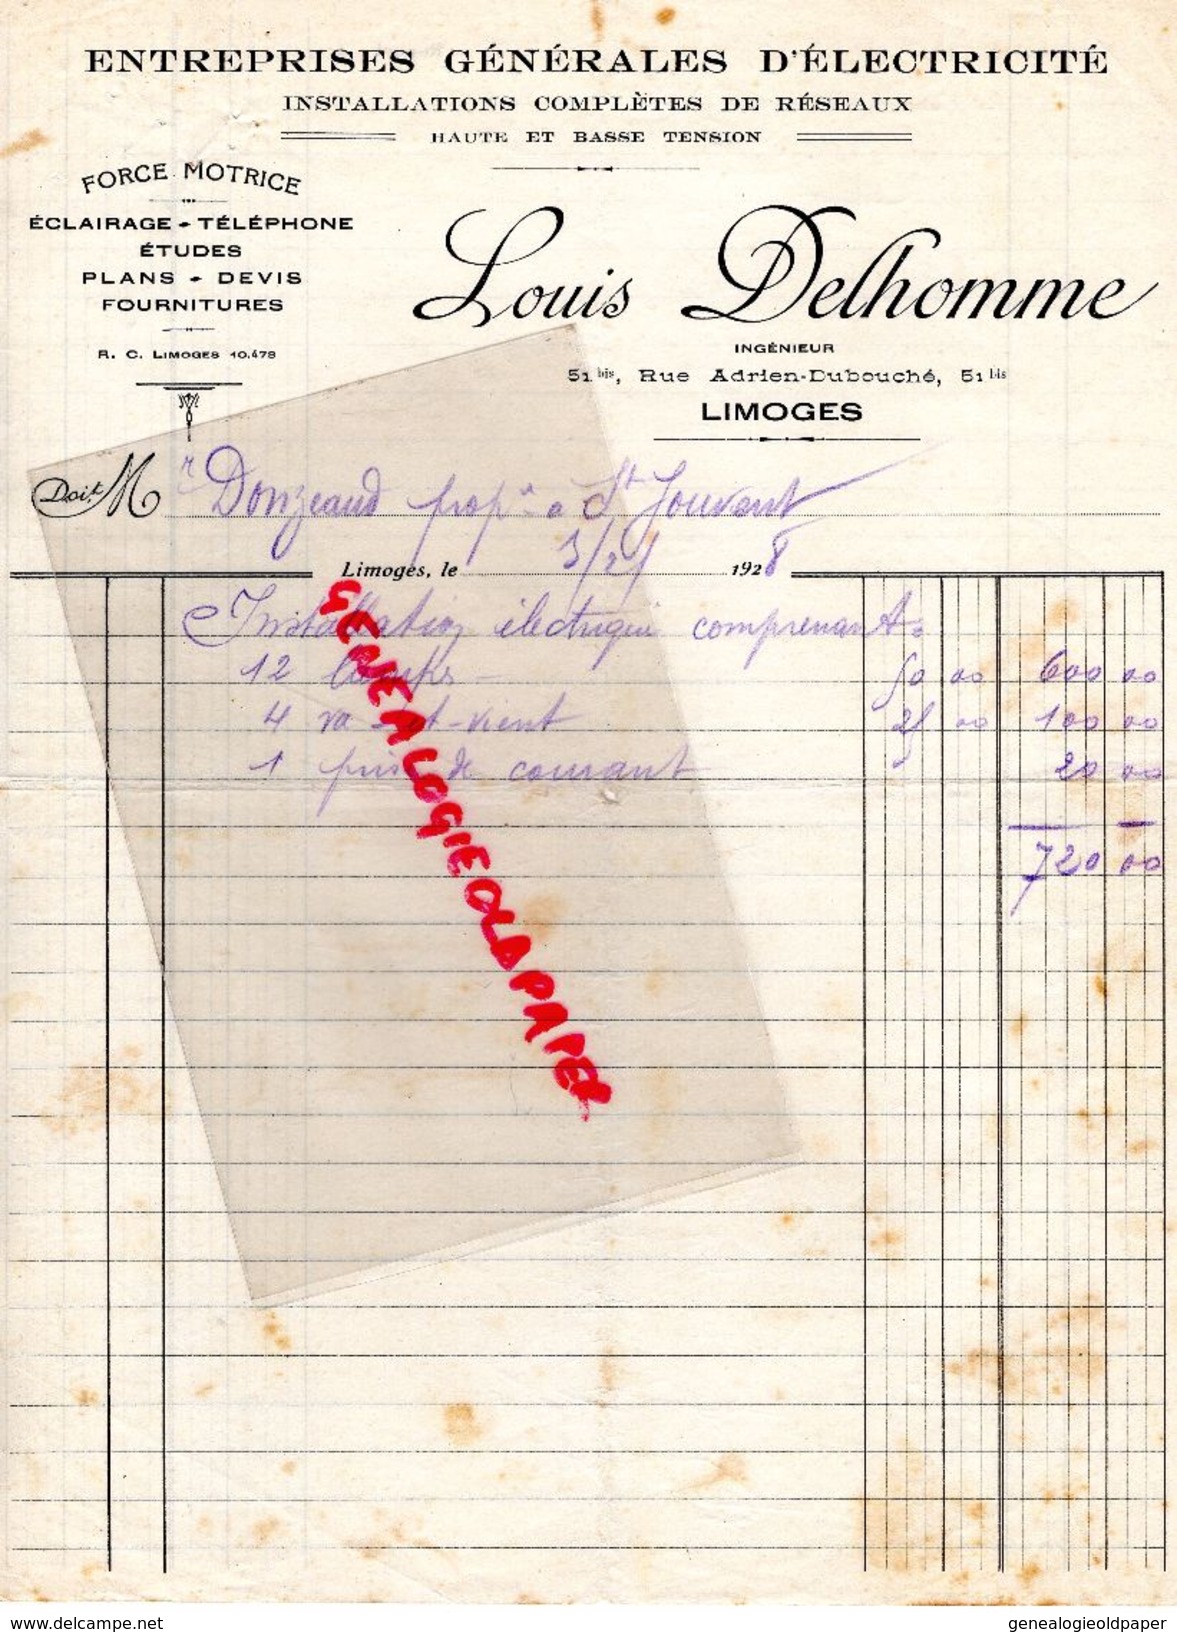 87 - LIMOGES - FACTURE LOUIS DELHOMME -INGENIEUR 51 RUE ADRIEN DUBOUCHE- ELECTRICITE FORCE MOTRICE- 1928 - Elektriciteit En Gas